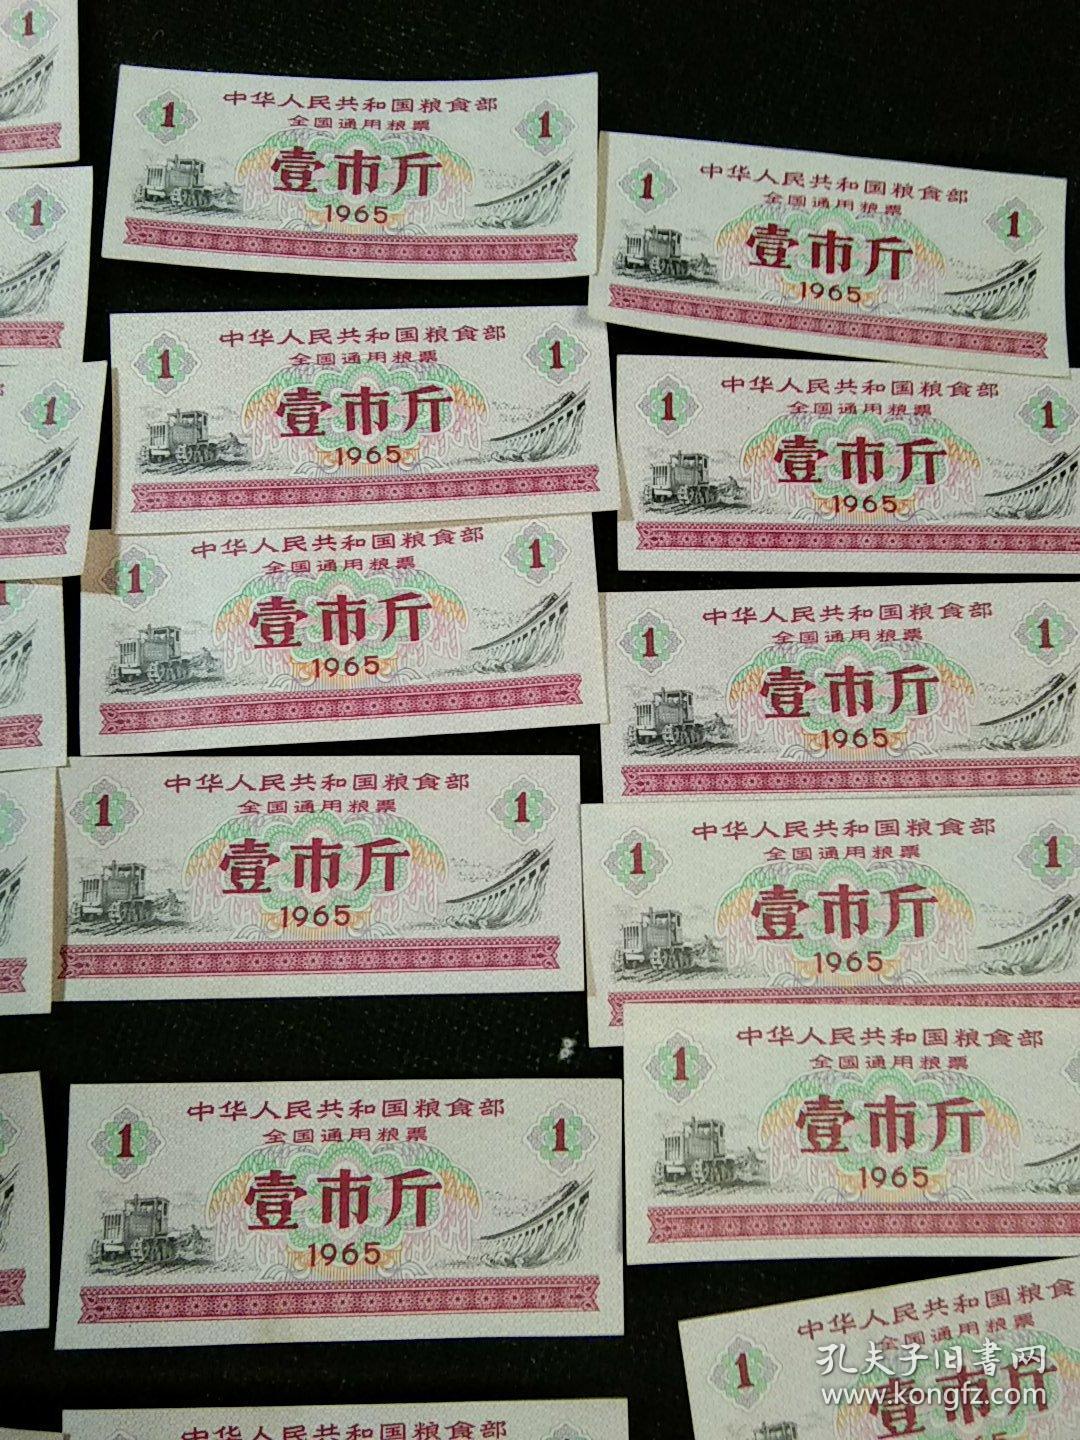 中华人民共和国粮食部全国通用粮票 壹市斤 1965年 19枚合拍全新美品